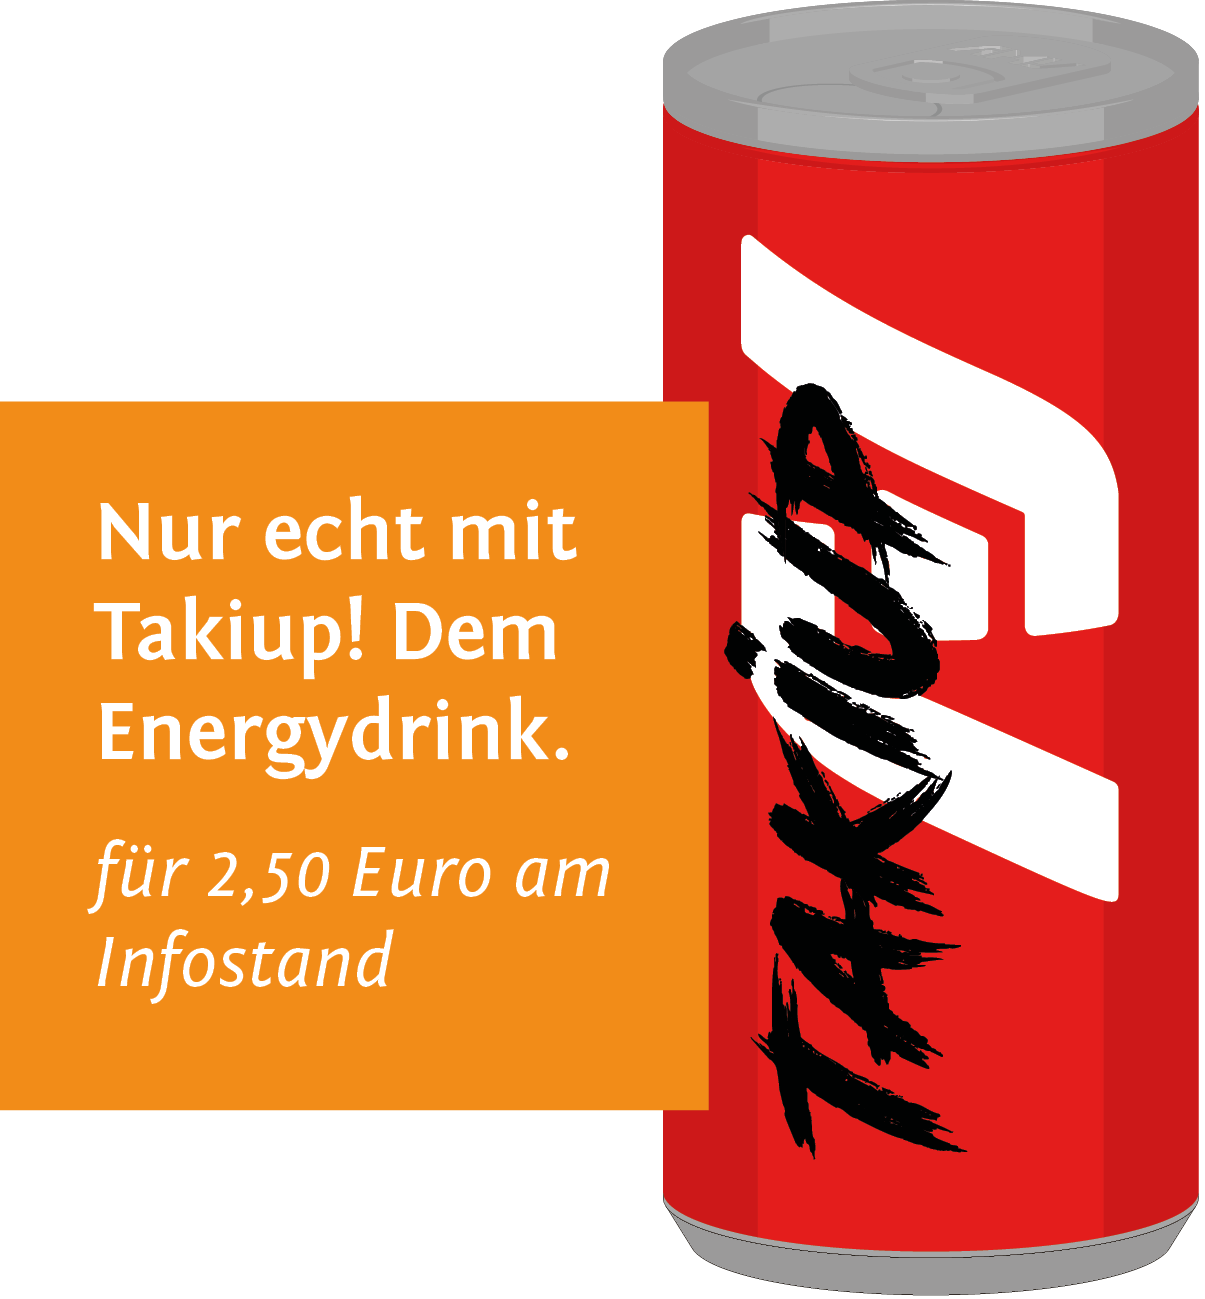 Abbildung von Takiup, dem Energydrink der AMV Happy Hour